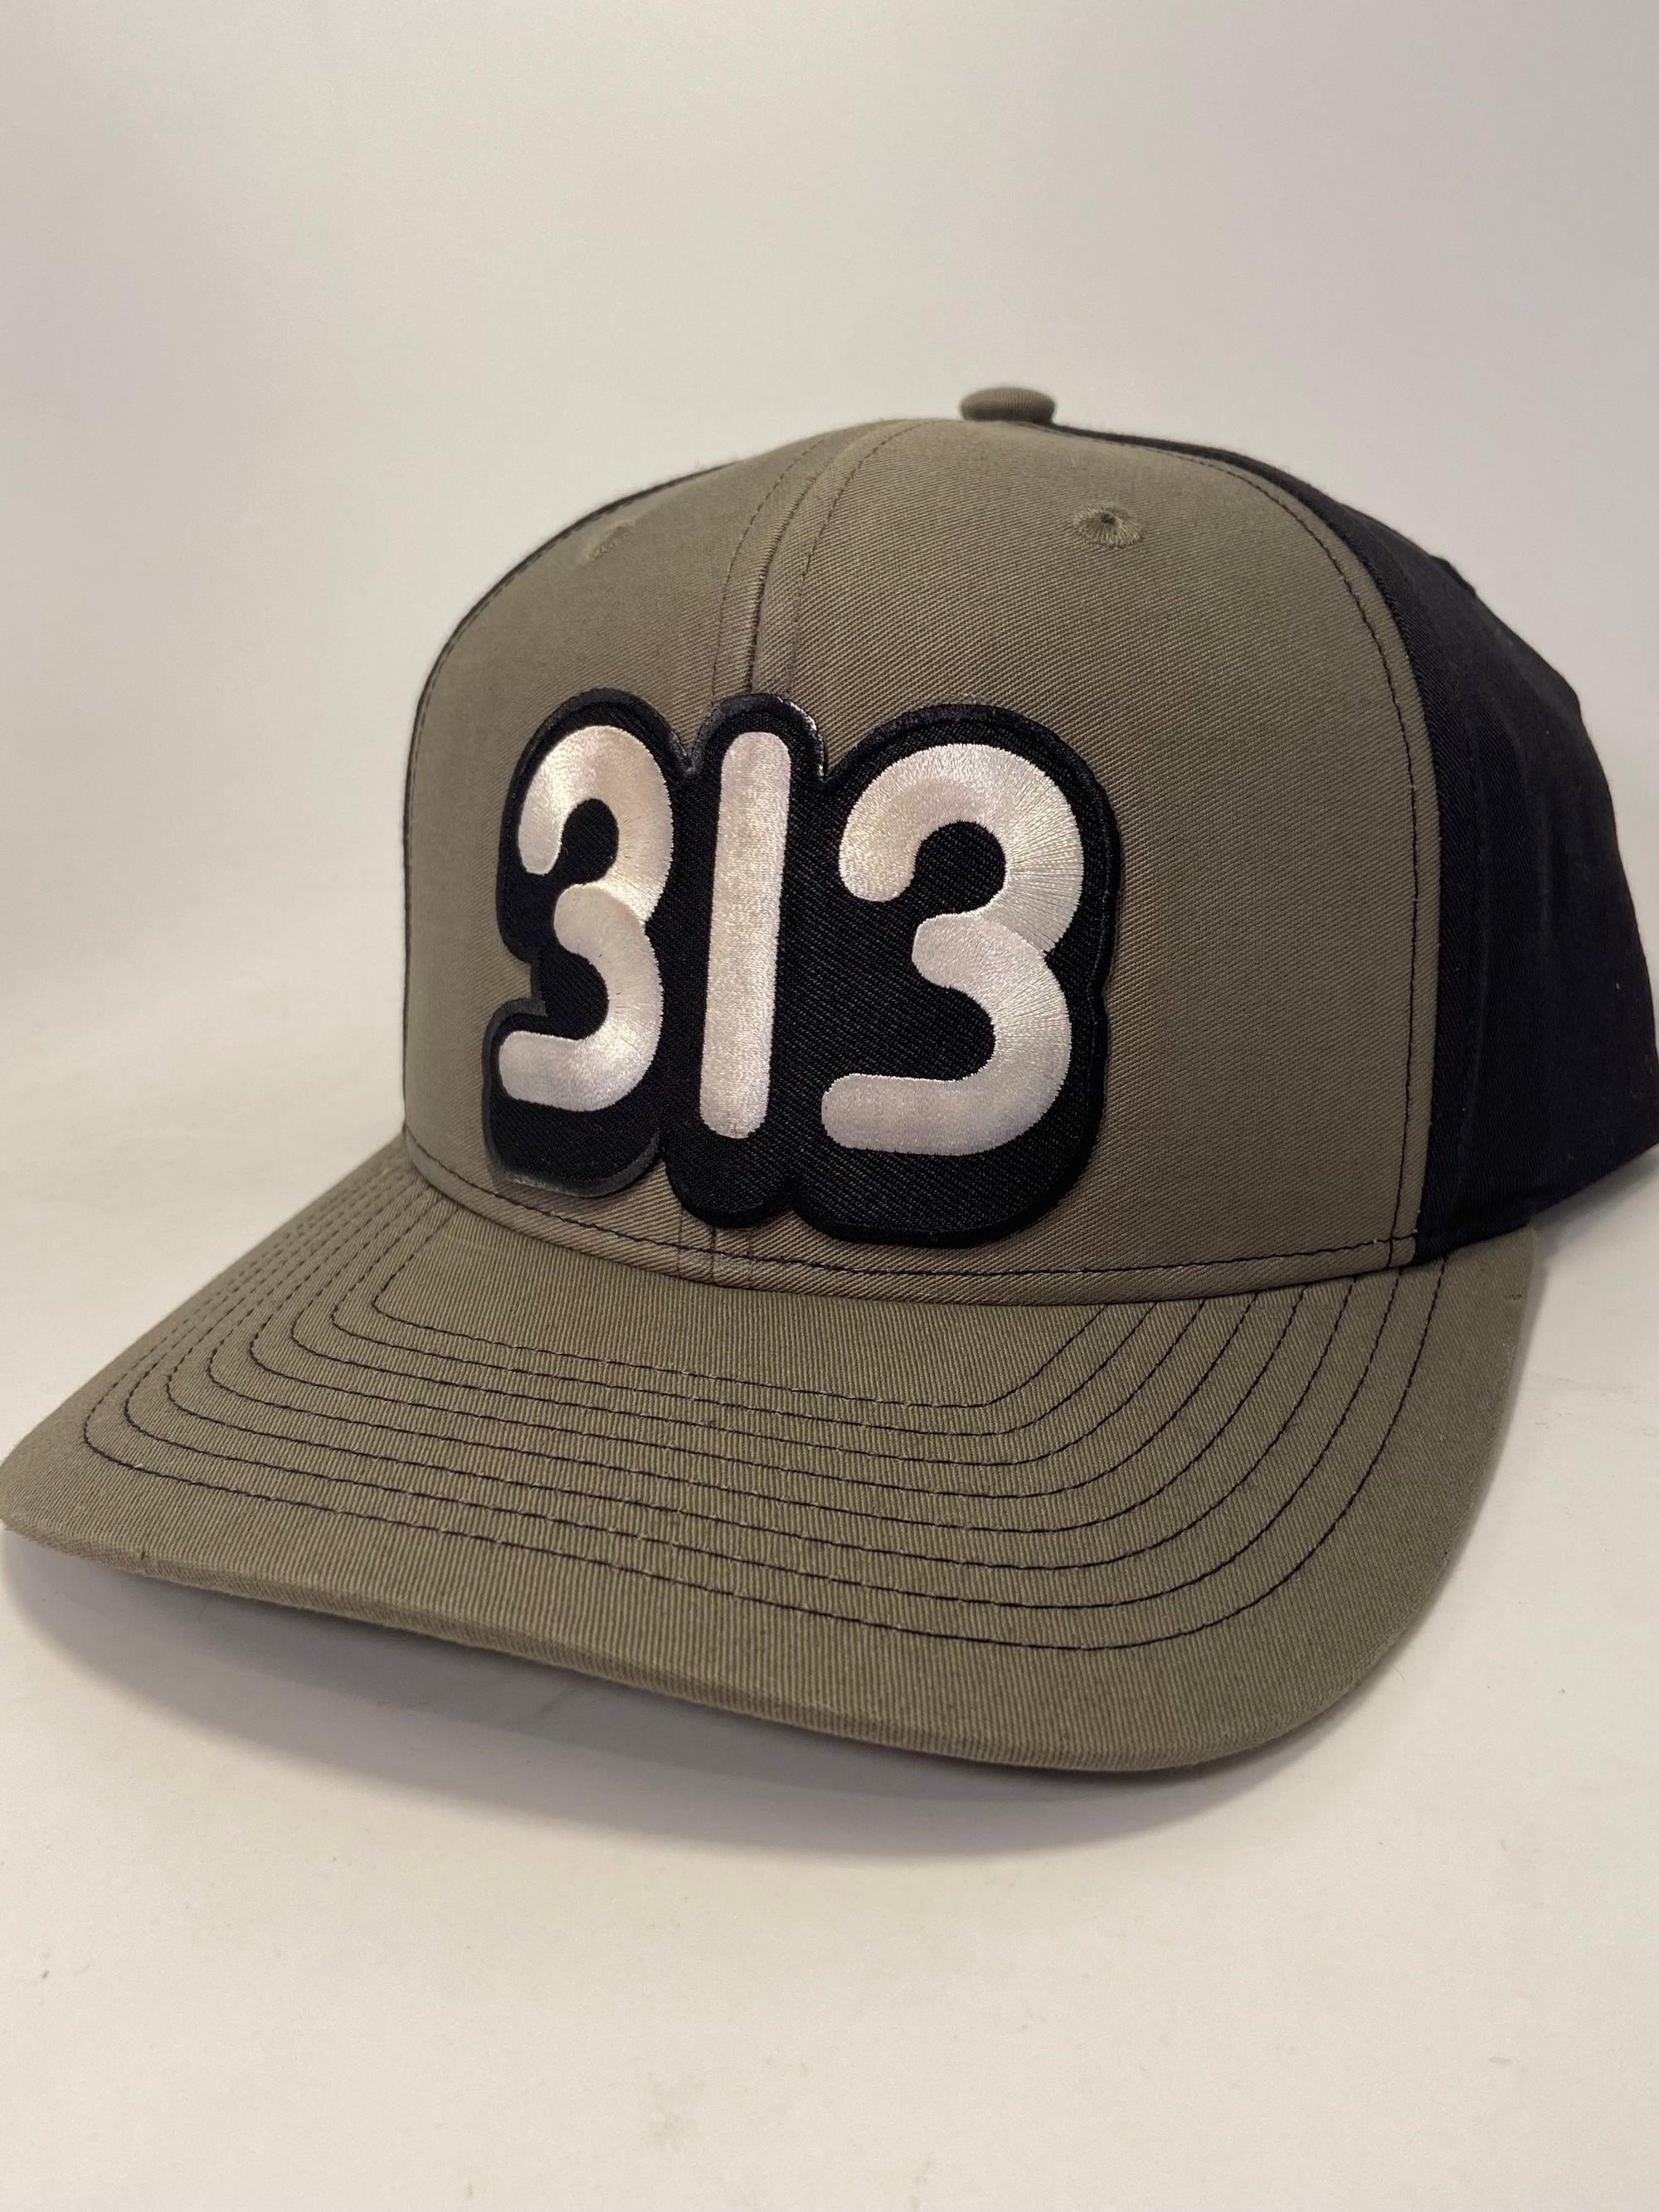 313 Snapback Hat / Black + Olive Hat   